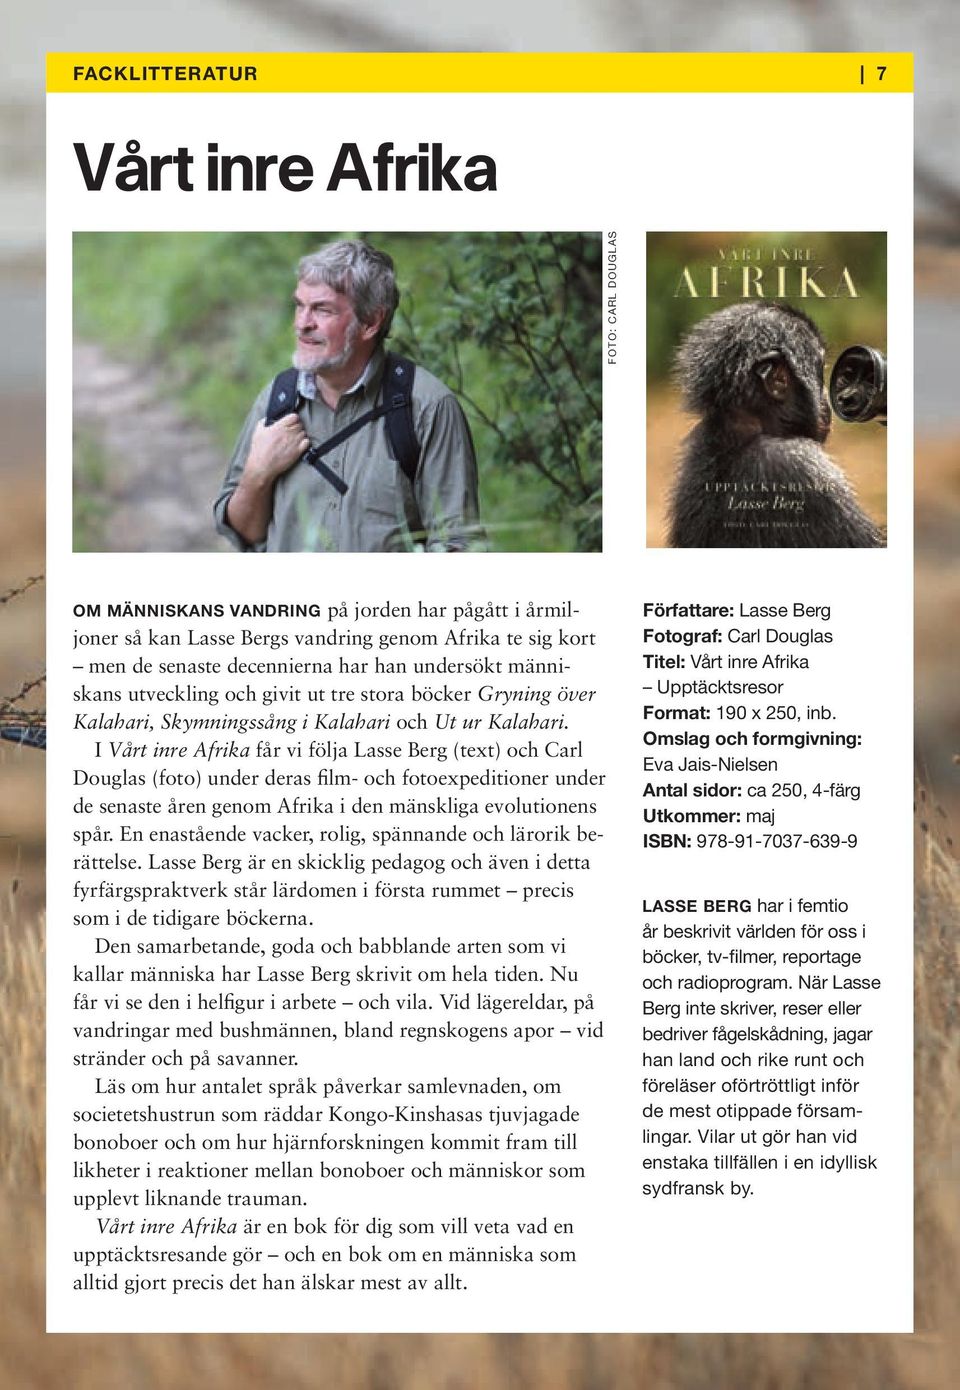 I Vårt inre Afrika får vi följa Lasse Berg (text) och Carl Douglas (foto) under deras film- och fotoexpeditioner under de senaste åren genom Afrika i den mänskliga evolutionens spår.